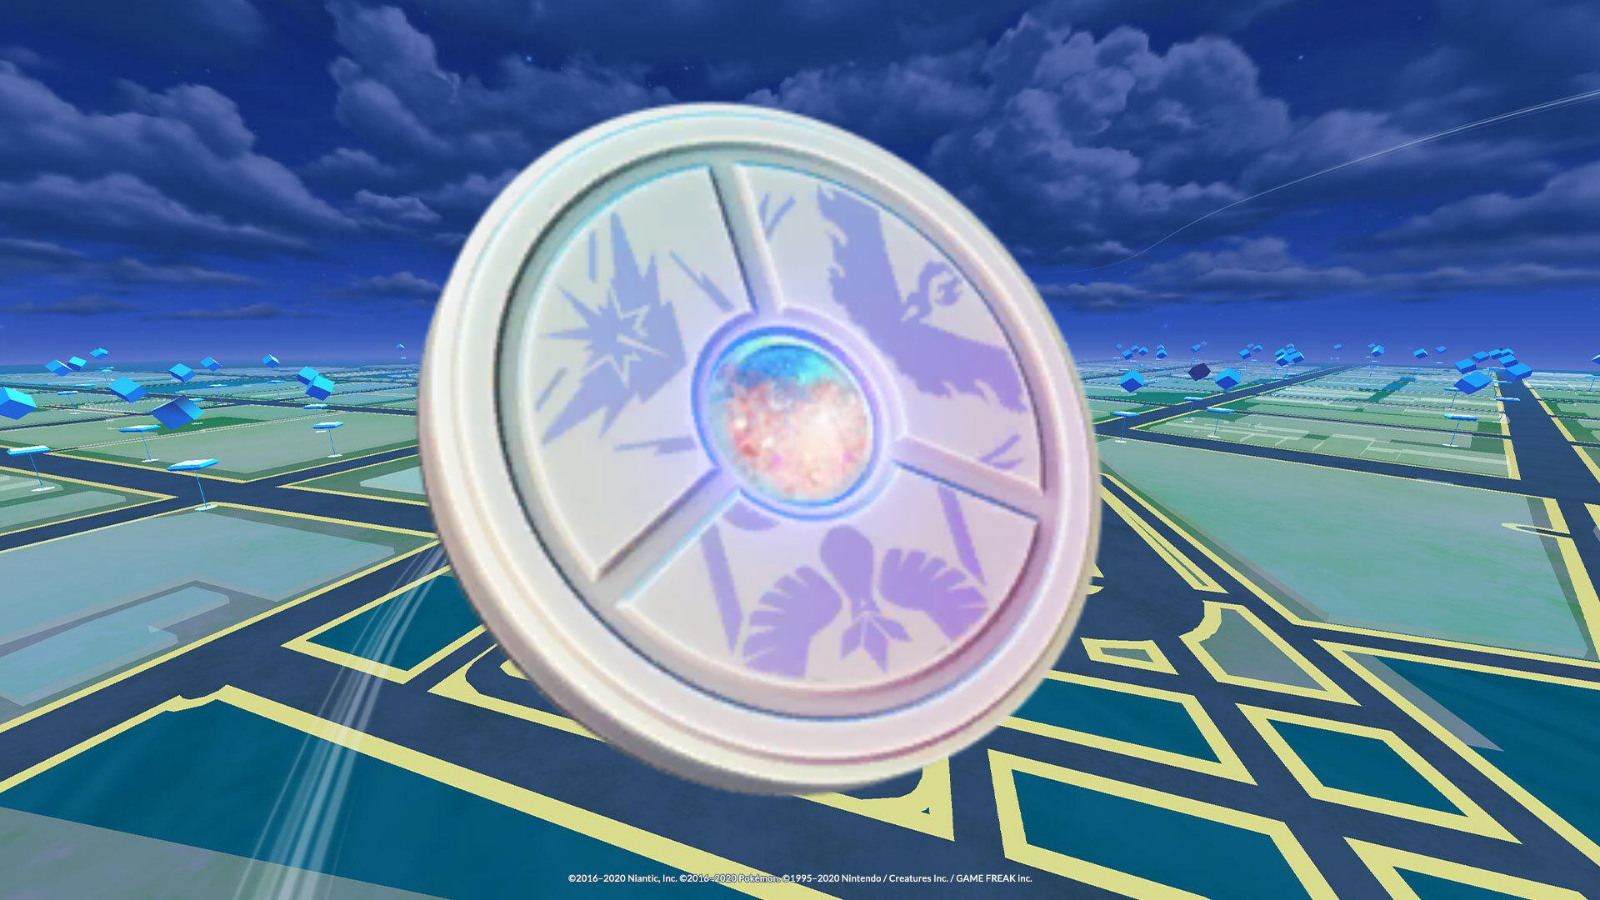 Pokémon GO: jogador mostra como trocar de shiny após mudança de evento, esports